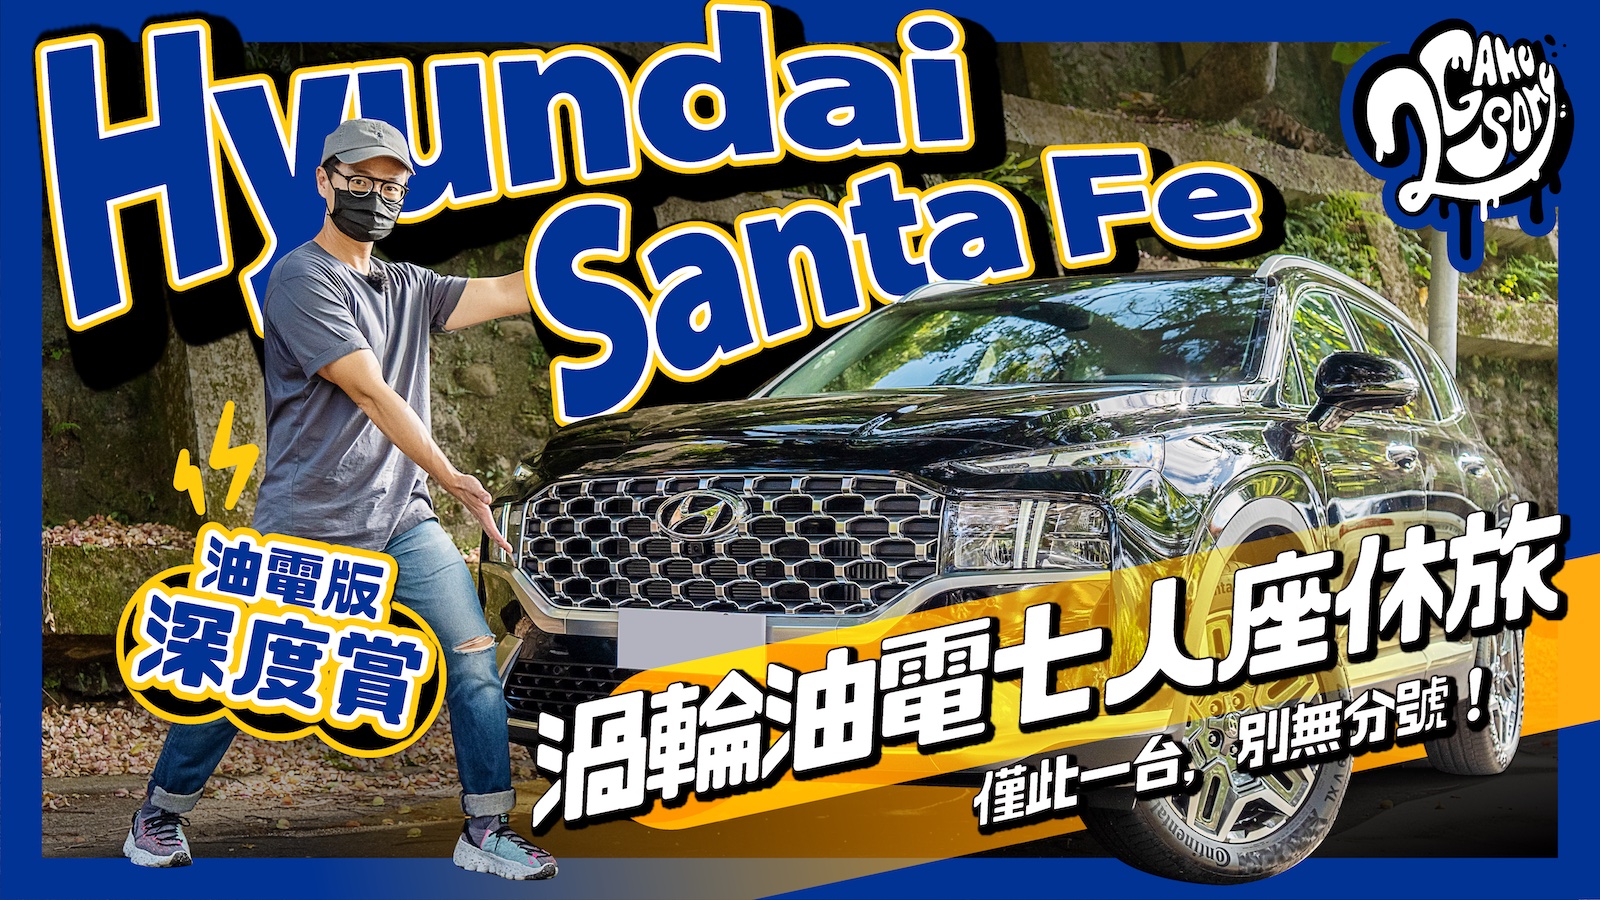 ▲ Hyundai Santa Fe 油電版 深度賞｜渦輪油電七人座休旅僅此一台，別無分號！